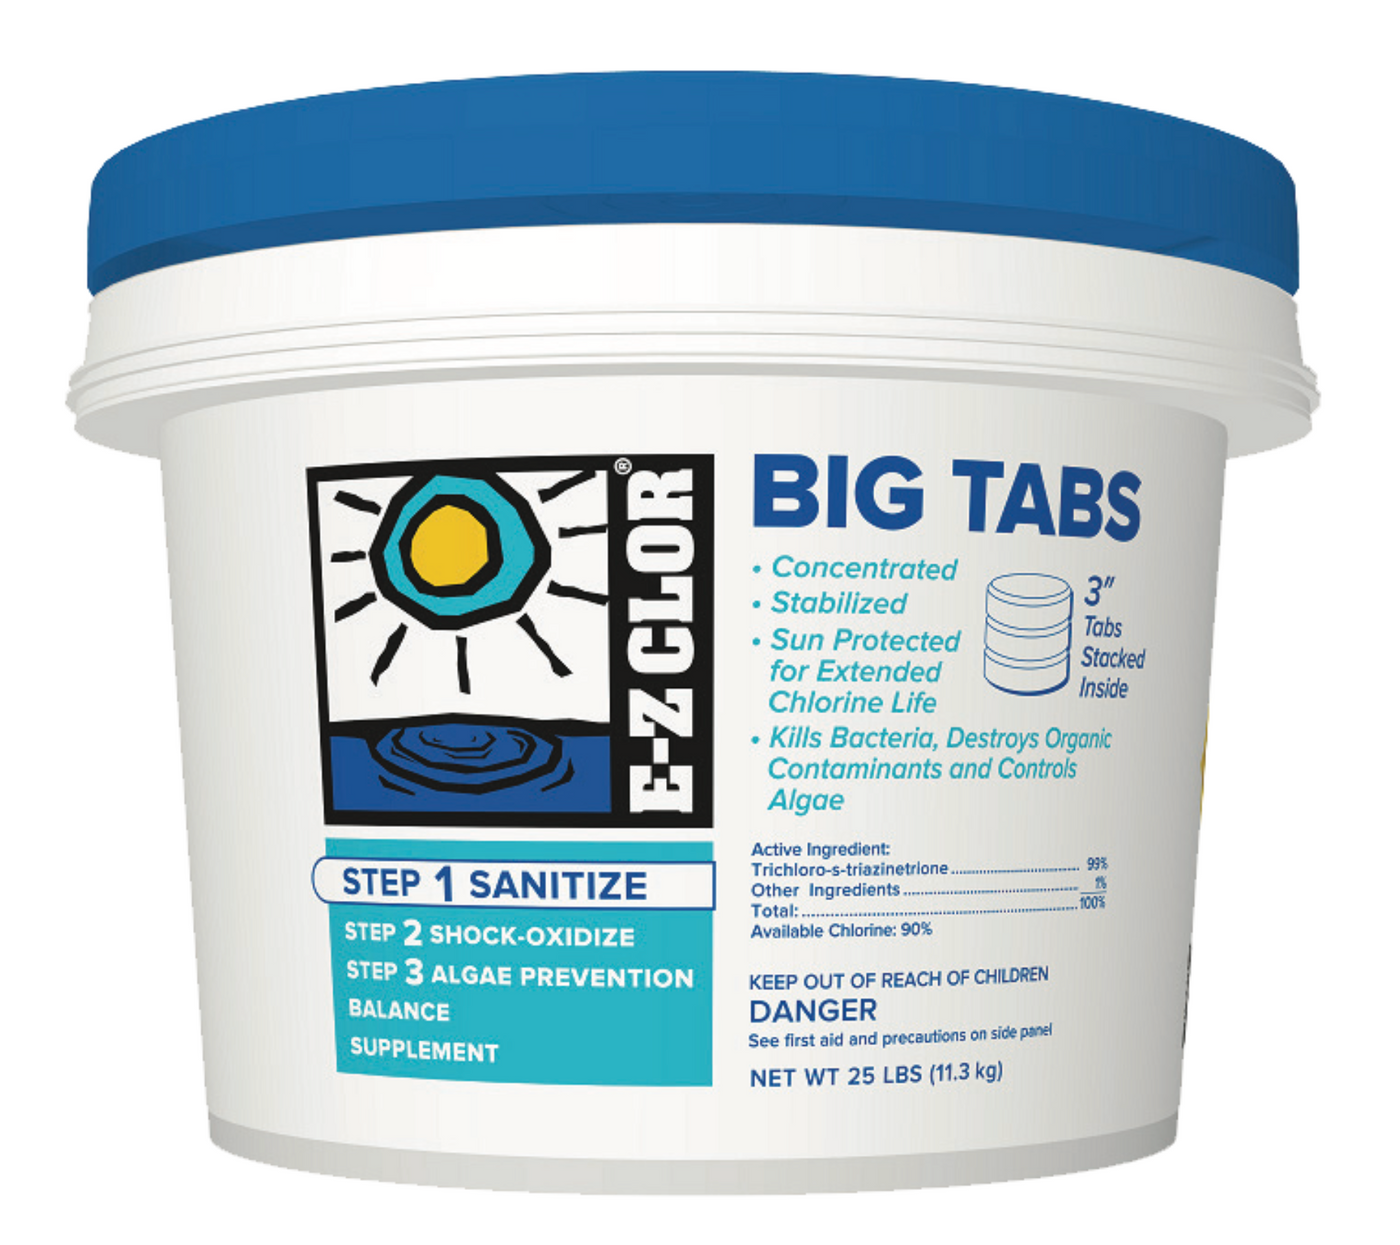 E-Z Clor Big Tabs 3" Chlorine Tablets